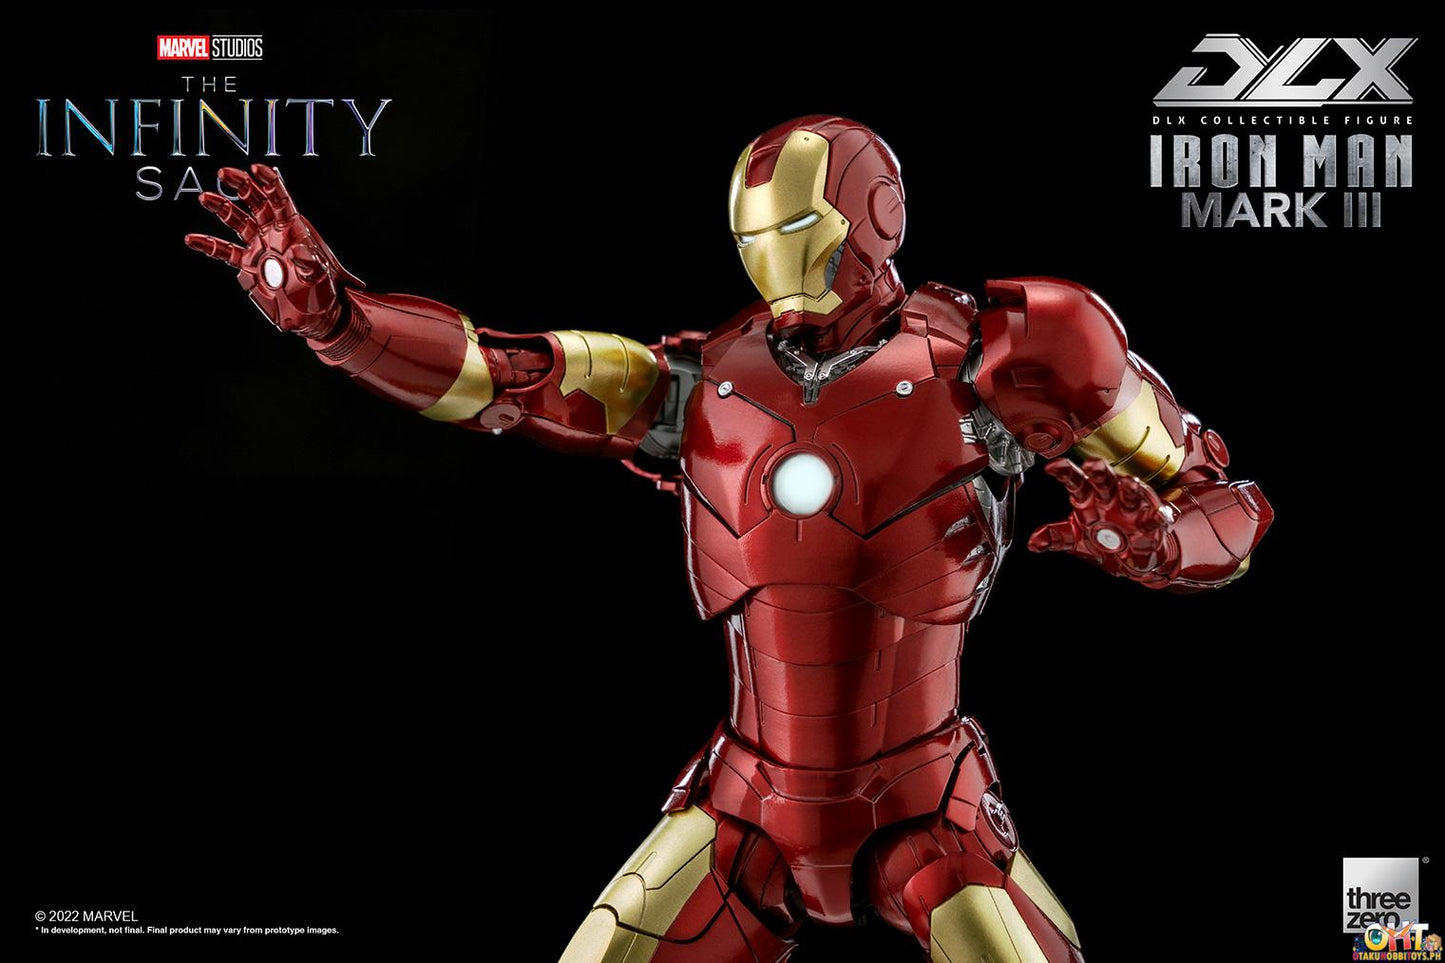 ThreeZero DLX Iron Man Mark 3 - Infinity Saga